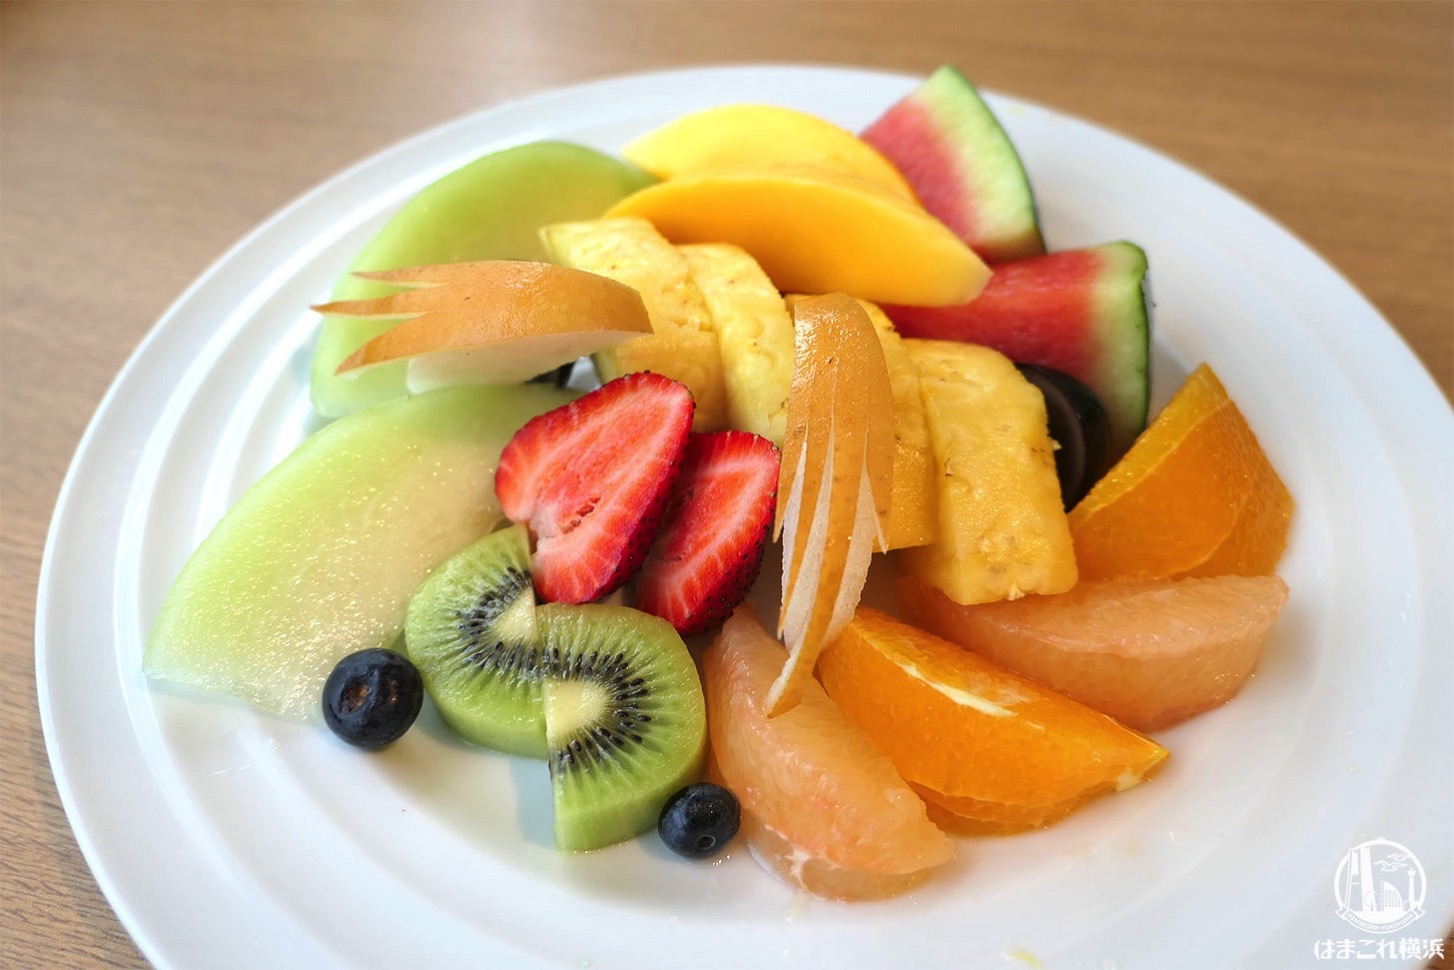 果実園リーベル横浜「フルーツサラダ」みなとみらいで色々なフルーツたっぷり食べたい人におすすめ！